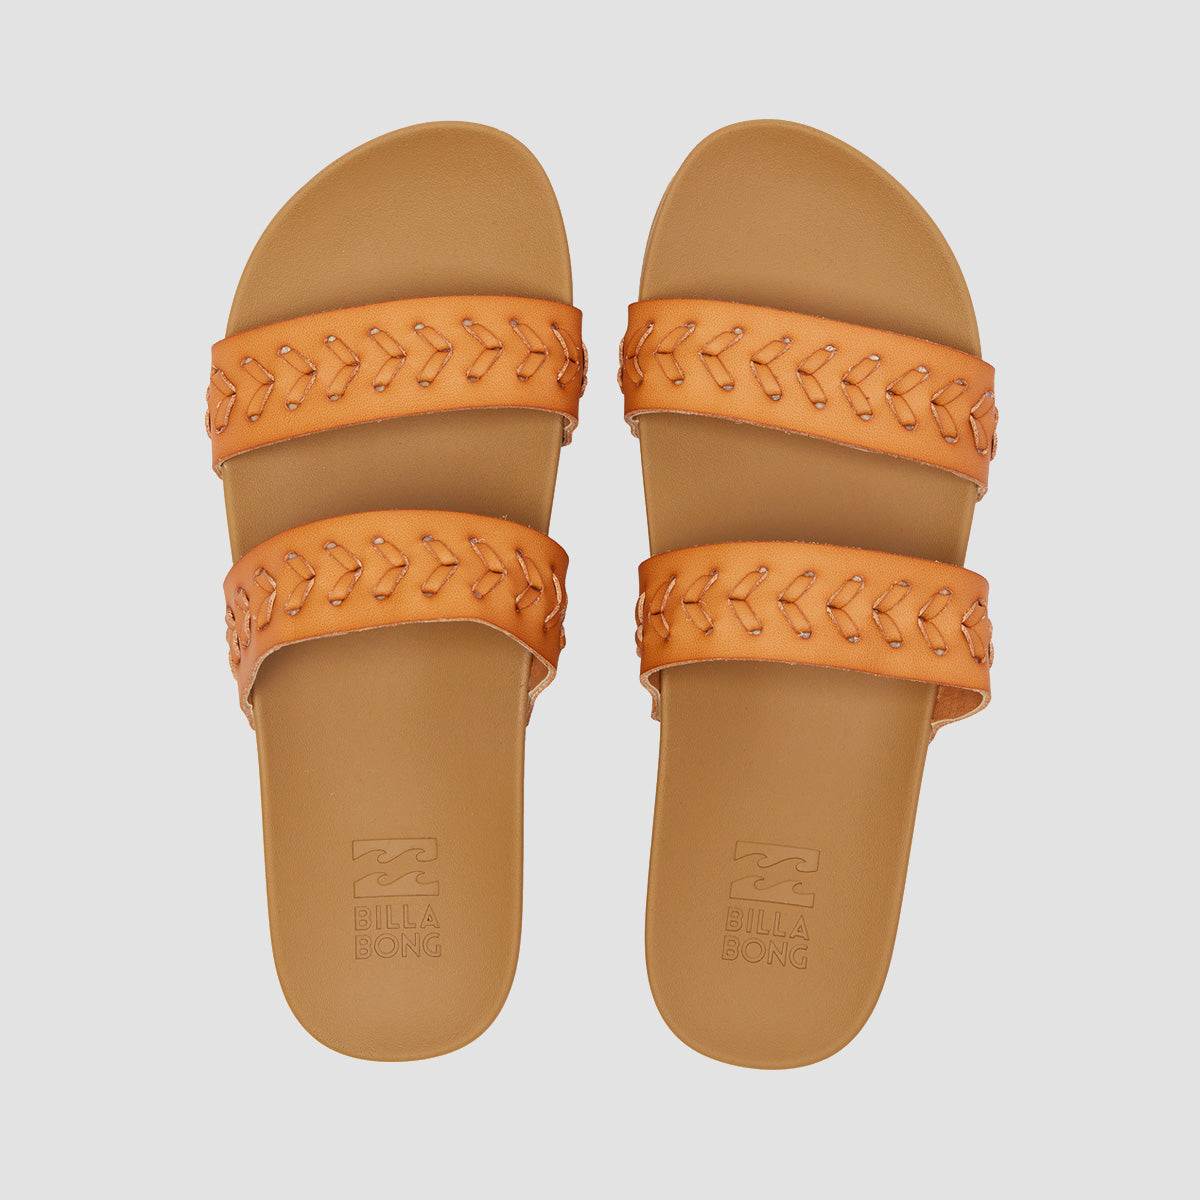 Billabong Venice Sandals Tan - Womens